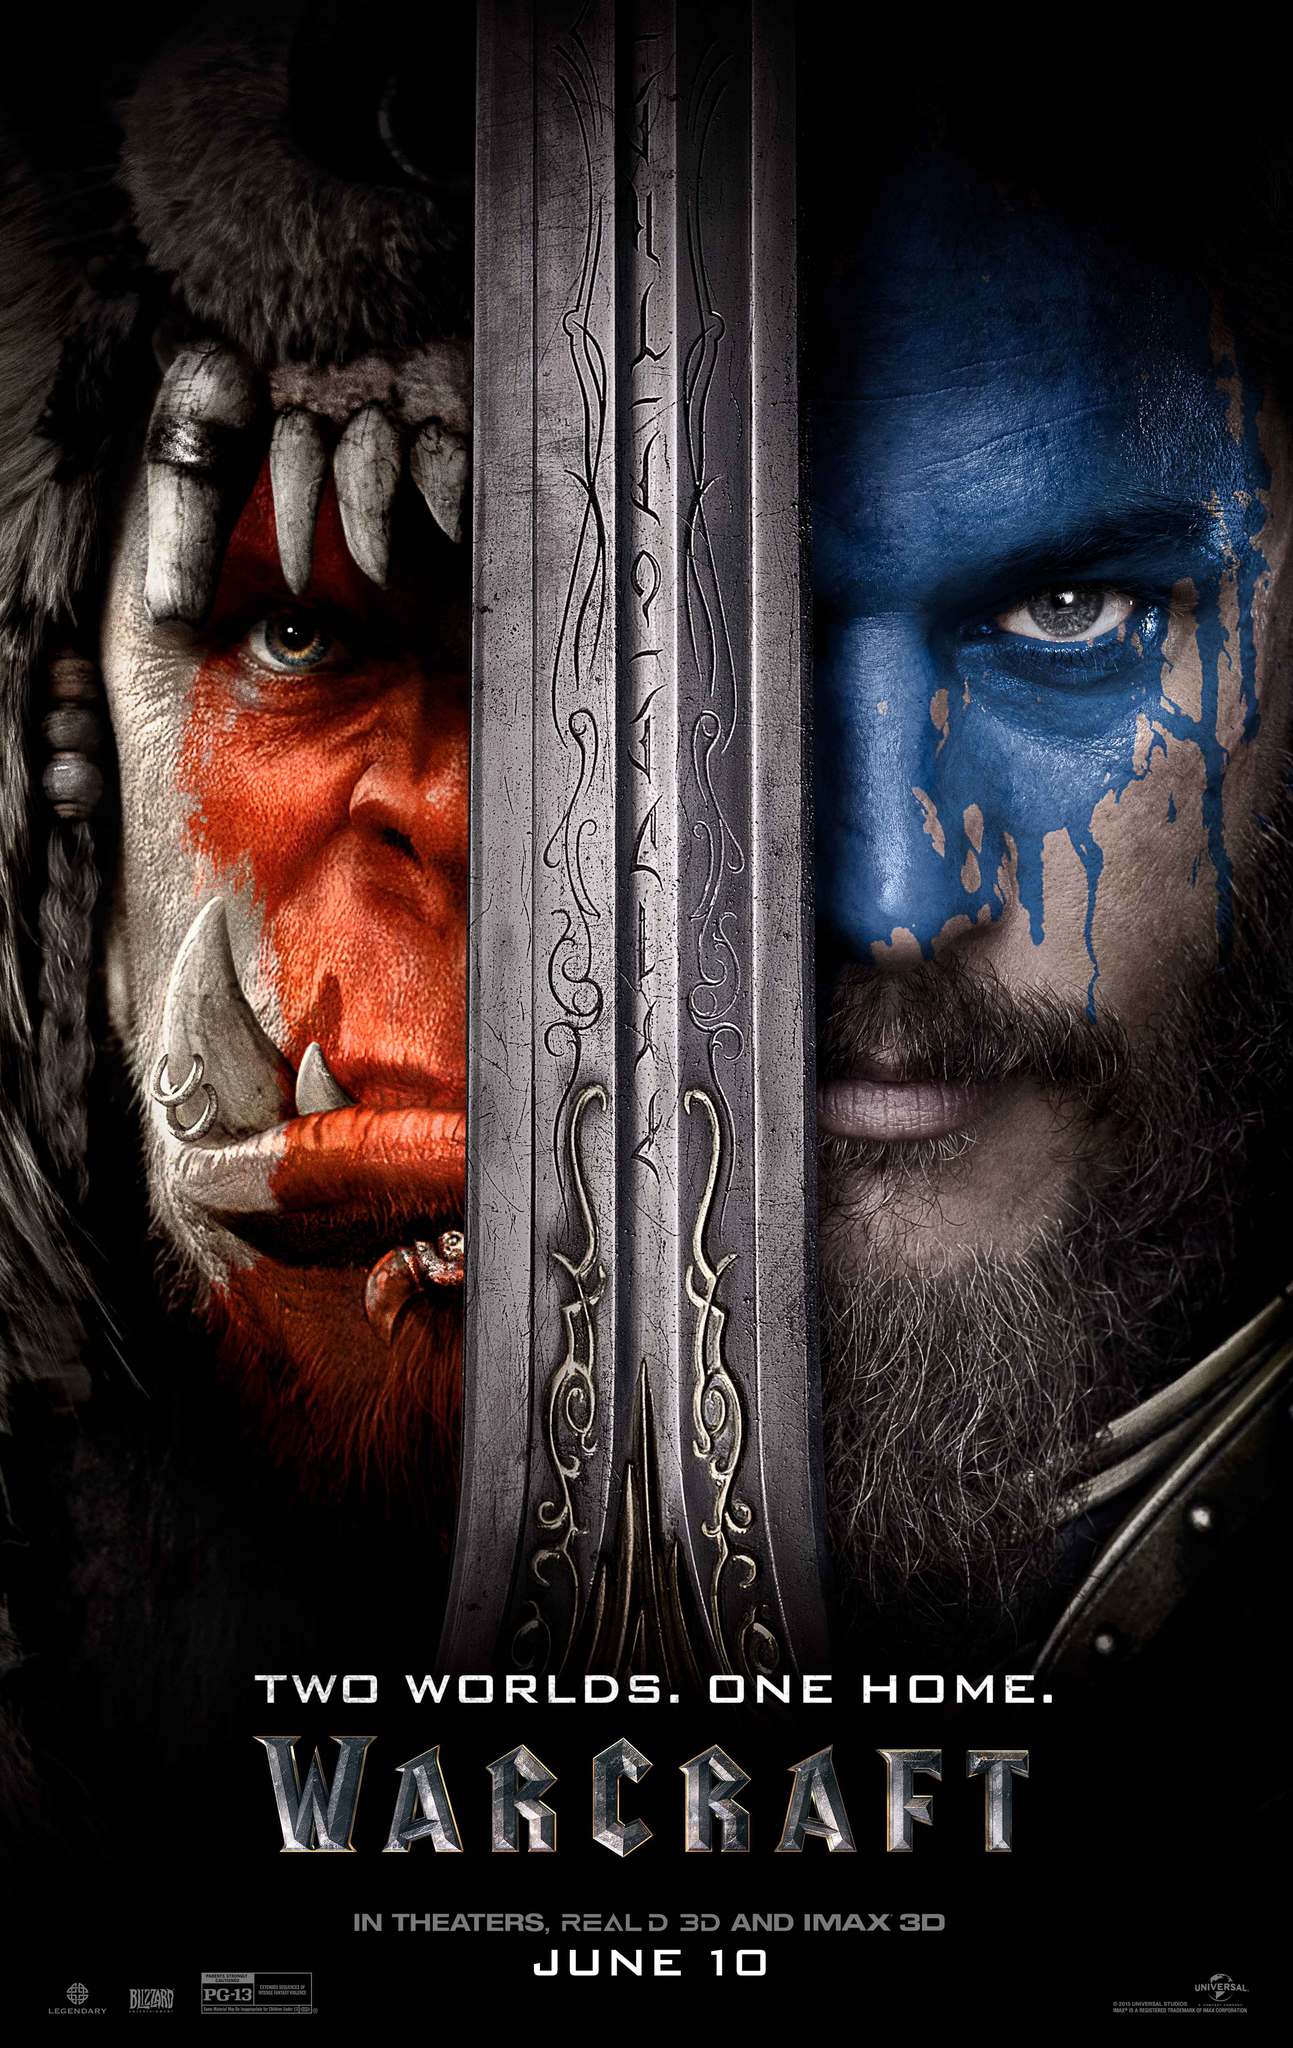 ดูหนังออนไลน์ Warcraft (2016) วอร์คราฟต์: กำเนิดศึกสองพิภพ